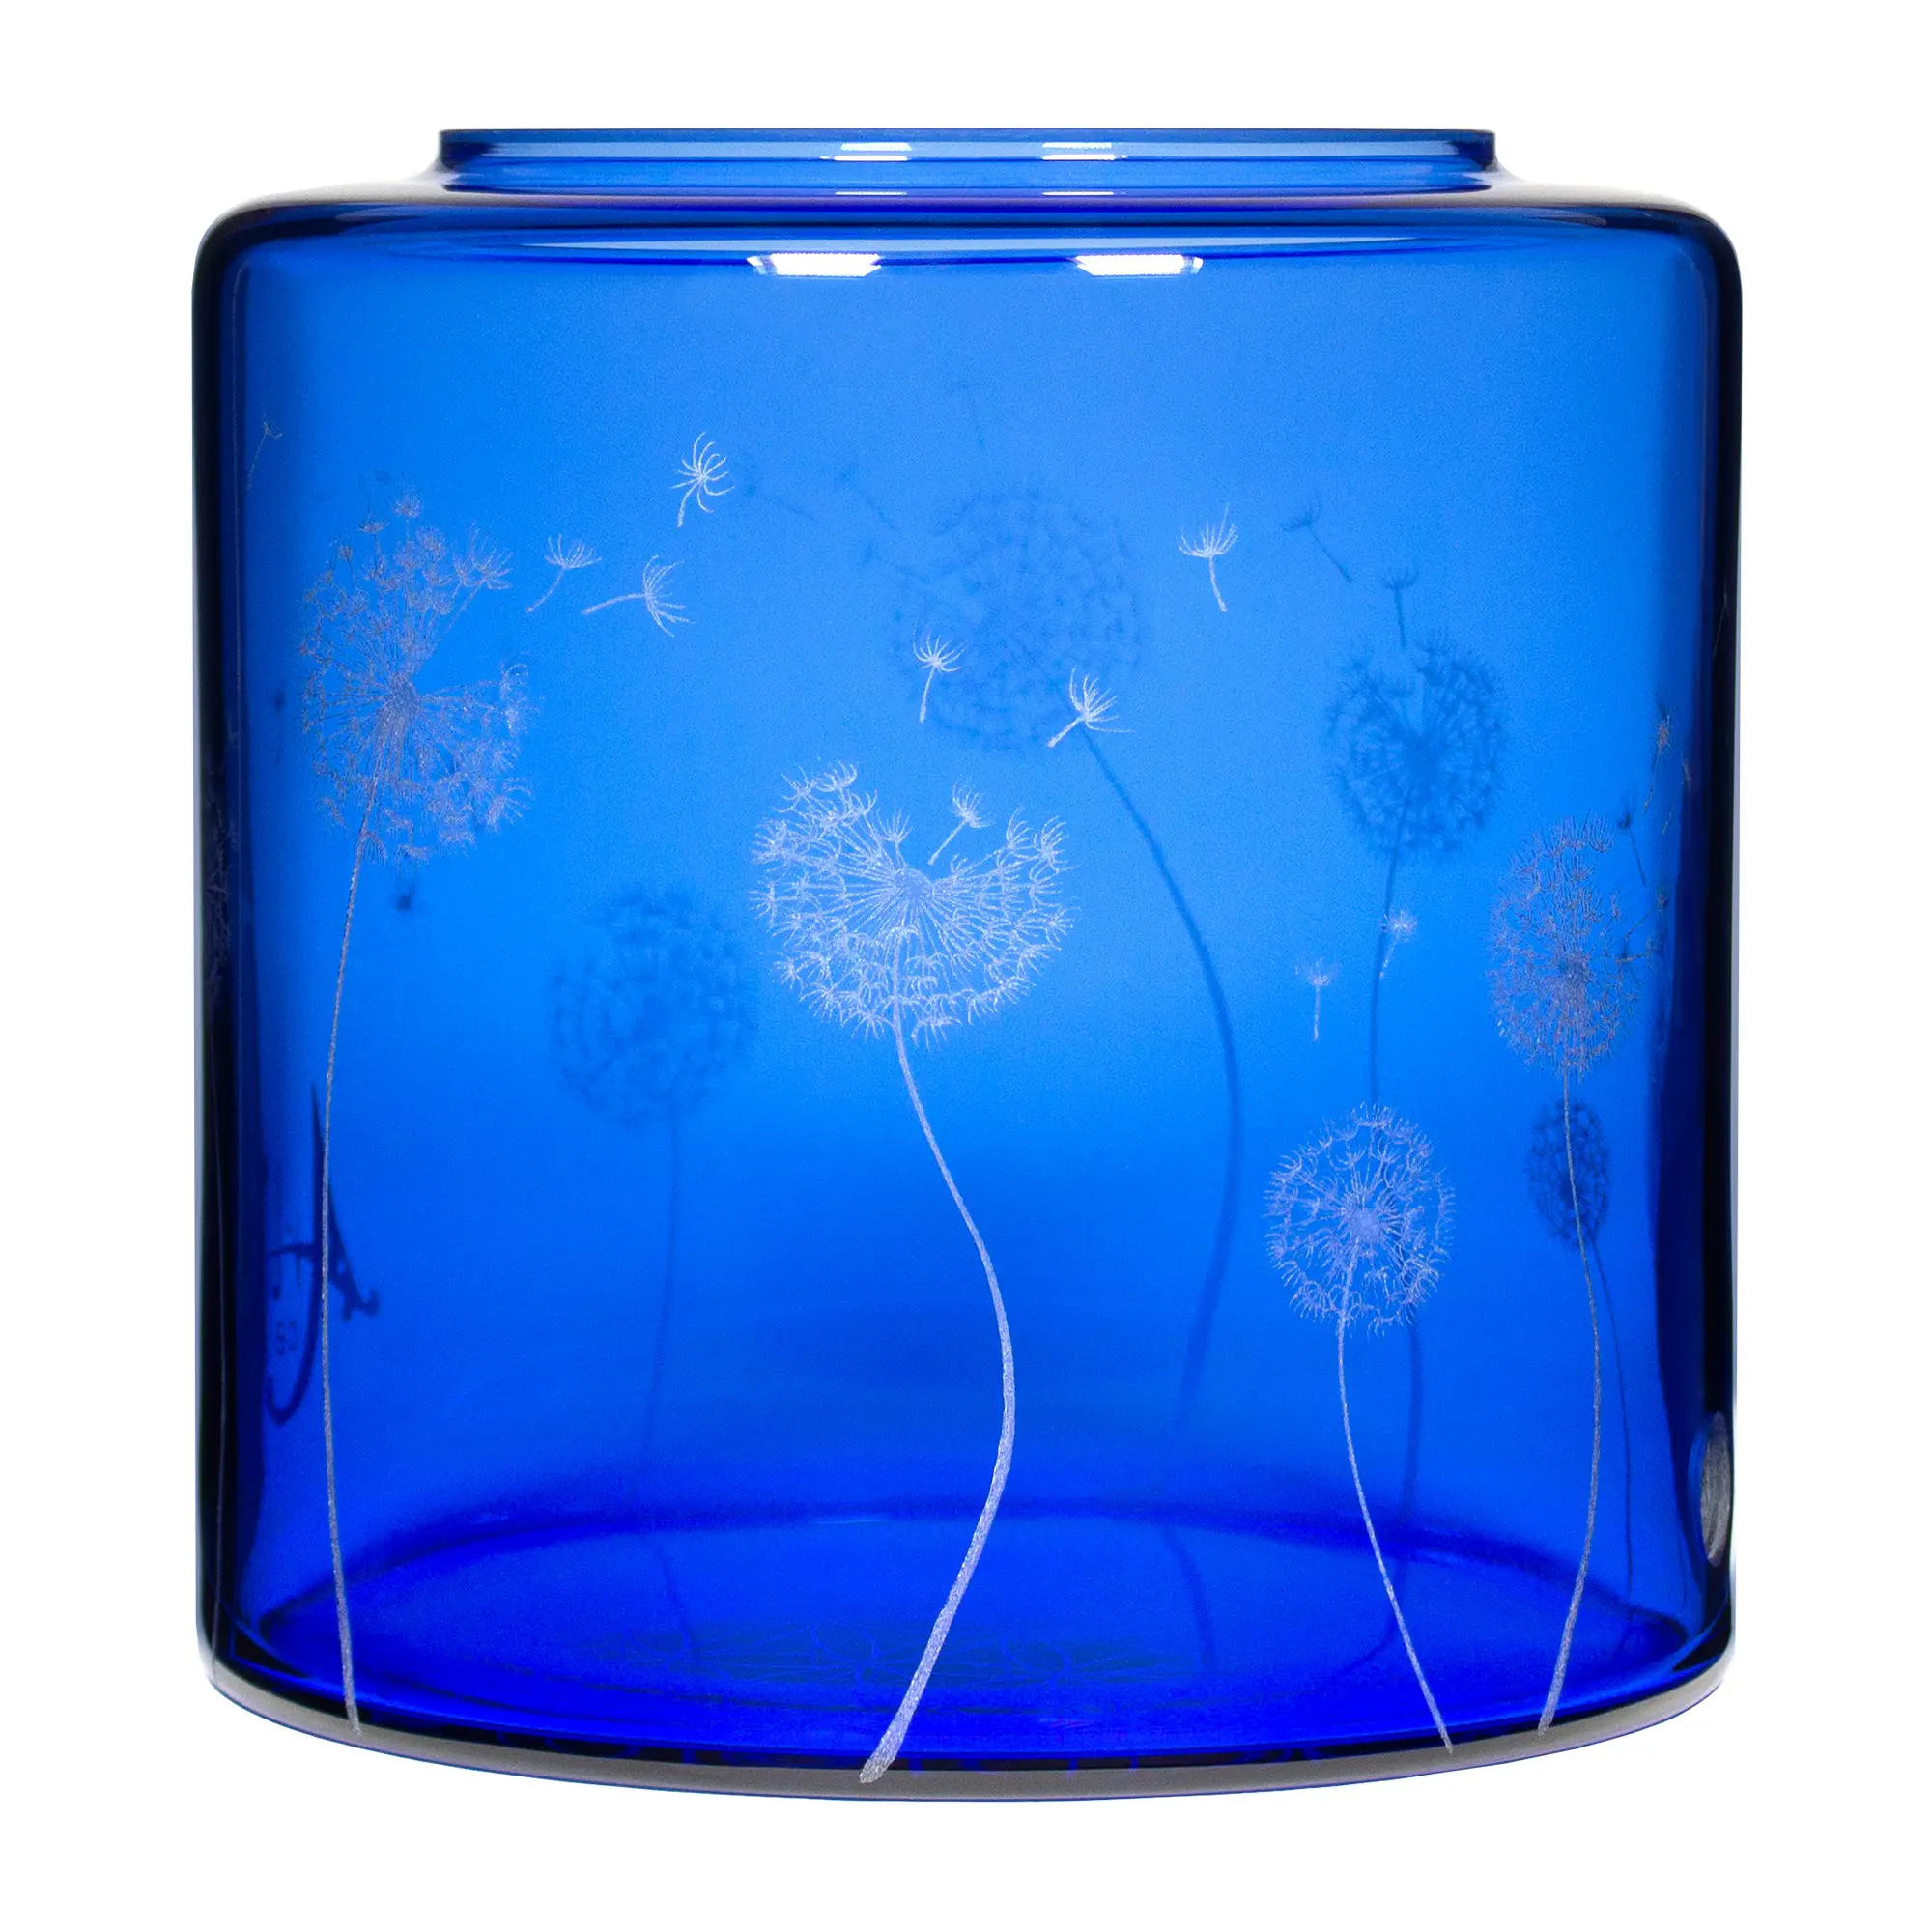 Ein Acala Wasserfilter Mini mit einer Handgravur. Die Gravur zeigt, auf blauem Glas, ganz viele Pusteblumen und einige samen die aus der Pusteblume herausfliegen.Ansicht von hinten links.